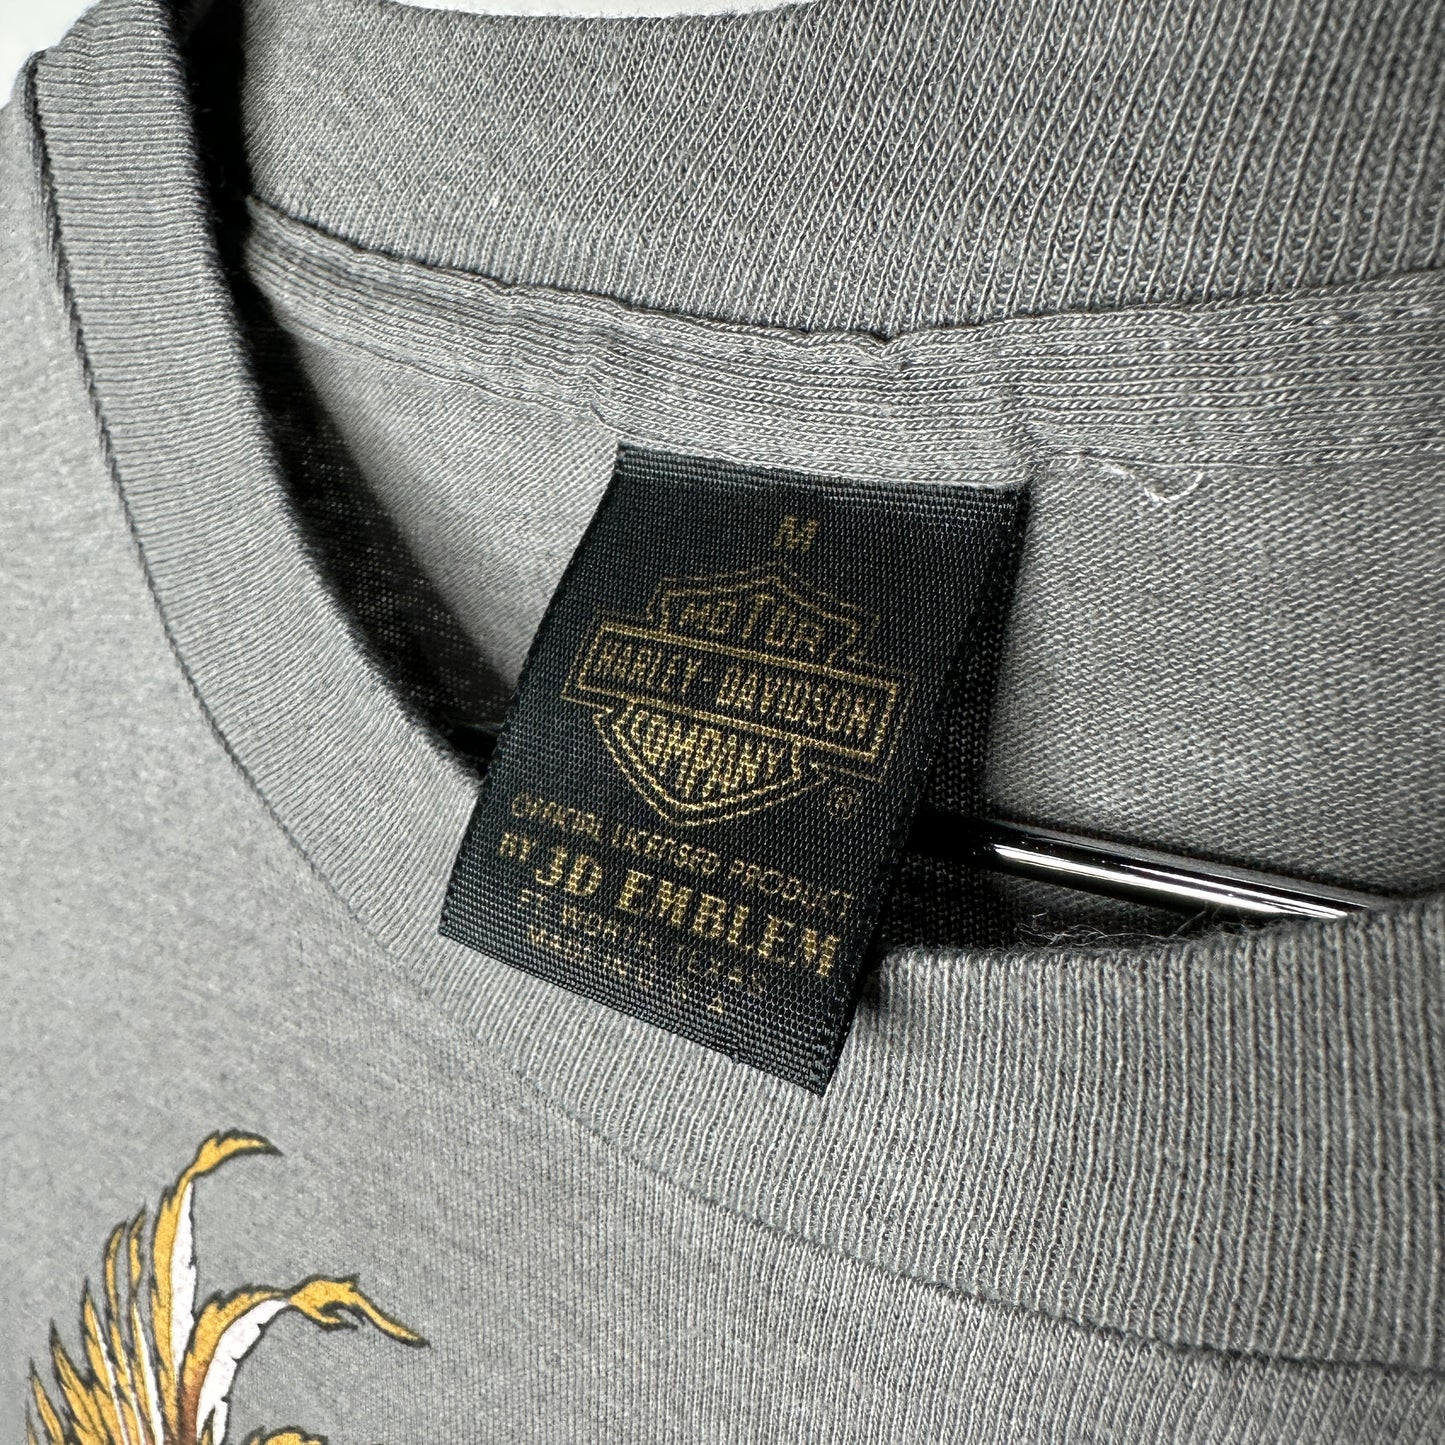 90s Harley Davidson 3D Emblem Eagle Gray Salt Lake Utah T-shirt sz M